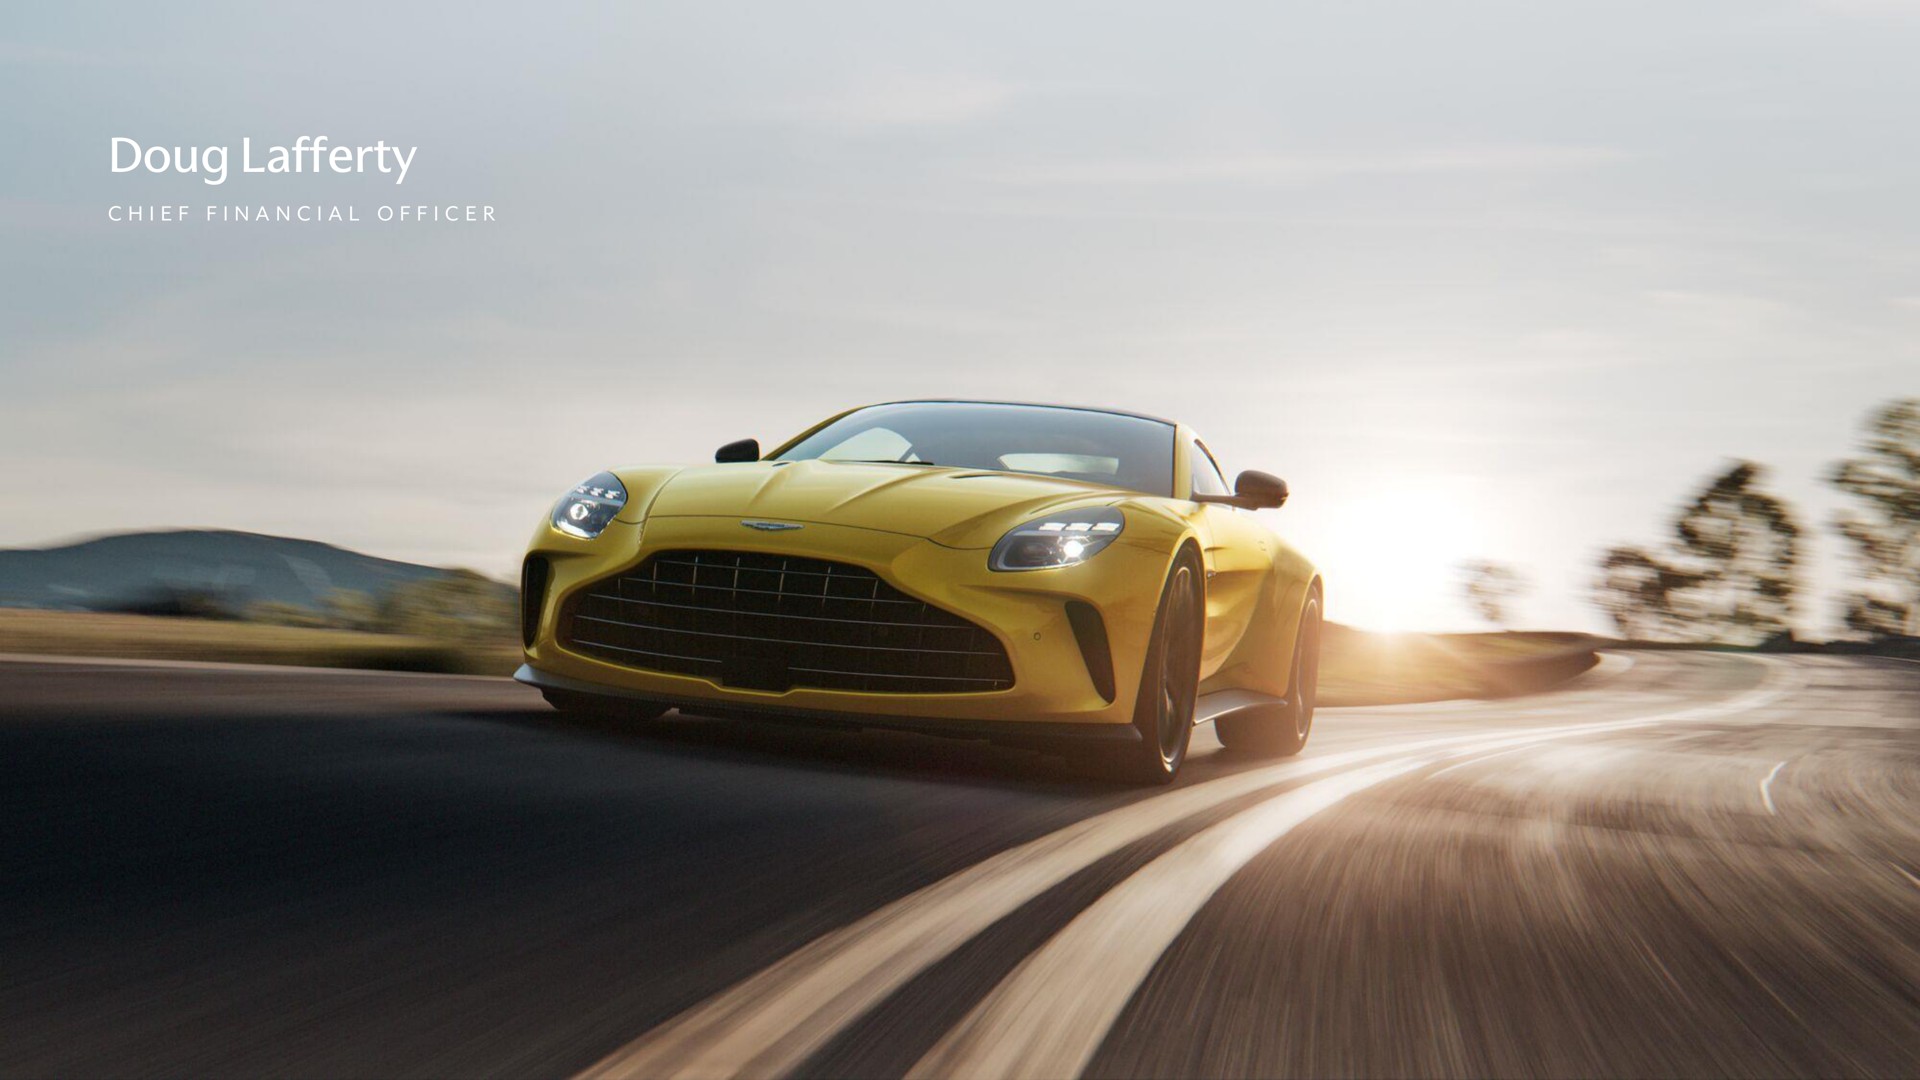  | Aston Martin Lagonda